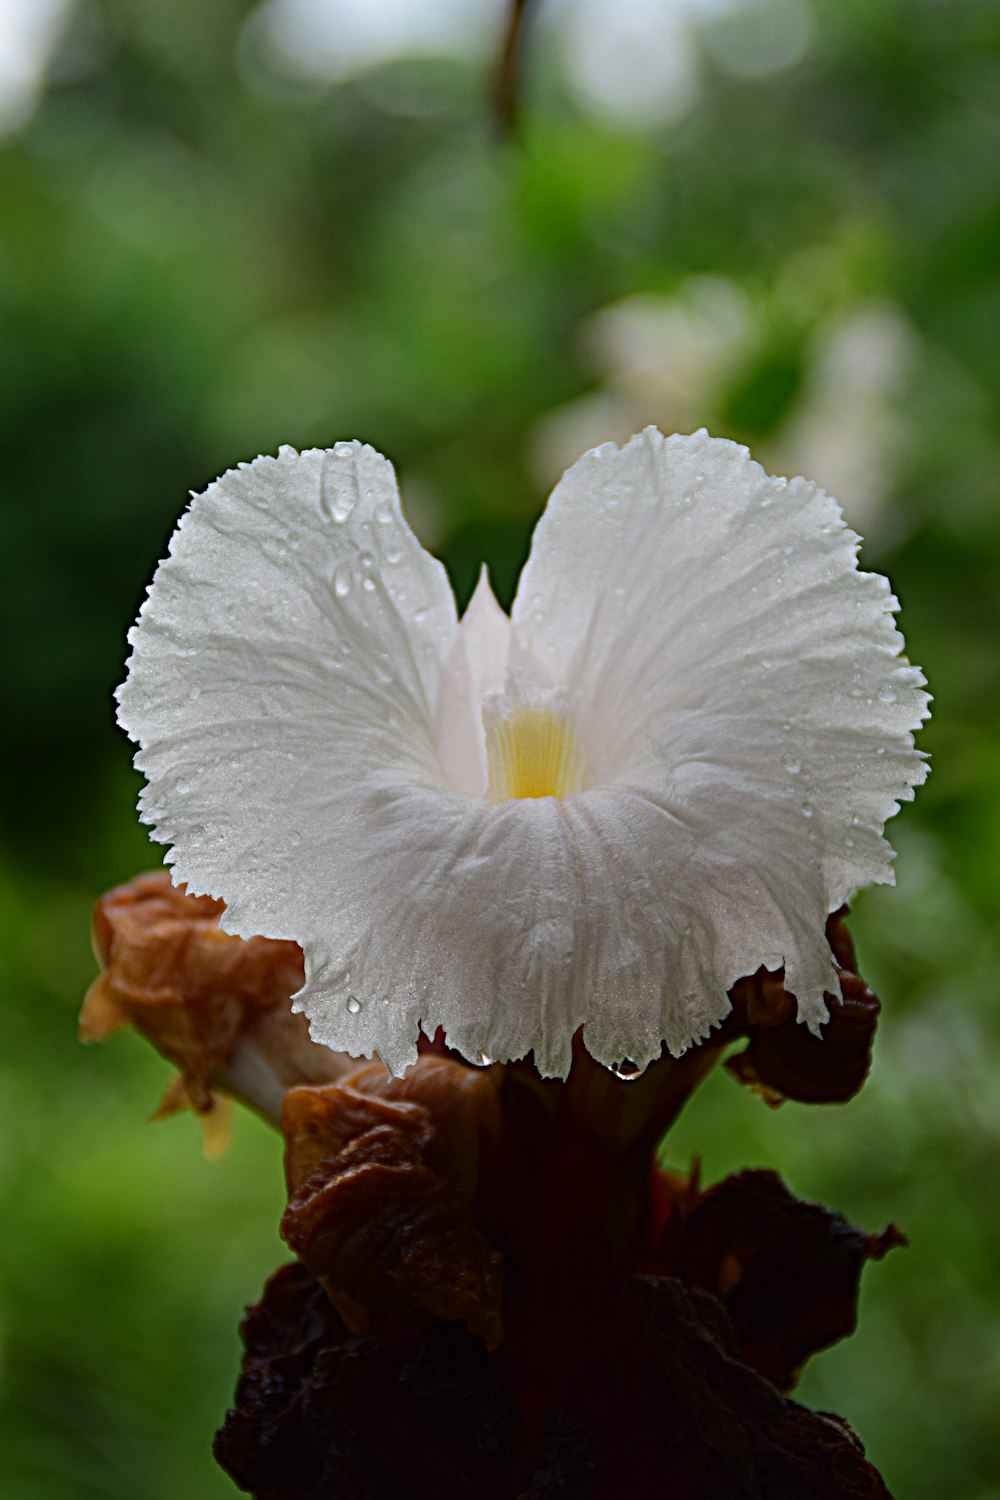 uma flor branca com gotículas de água sobre ela